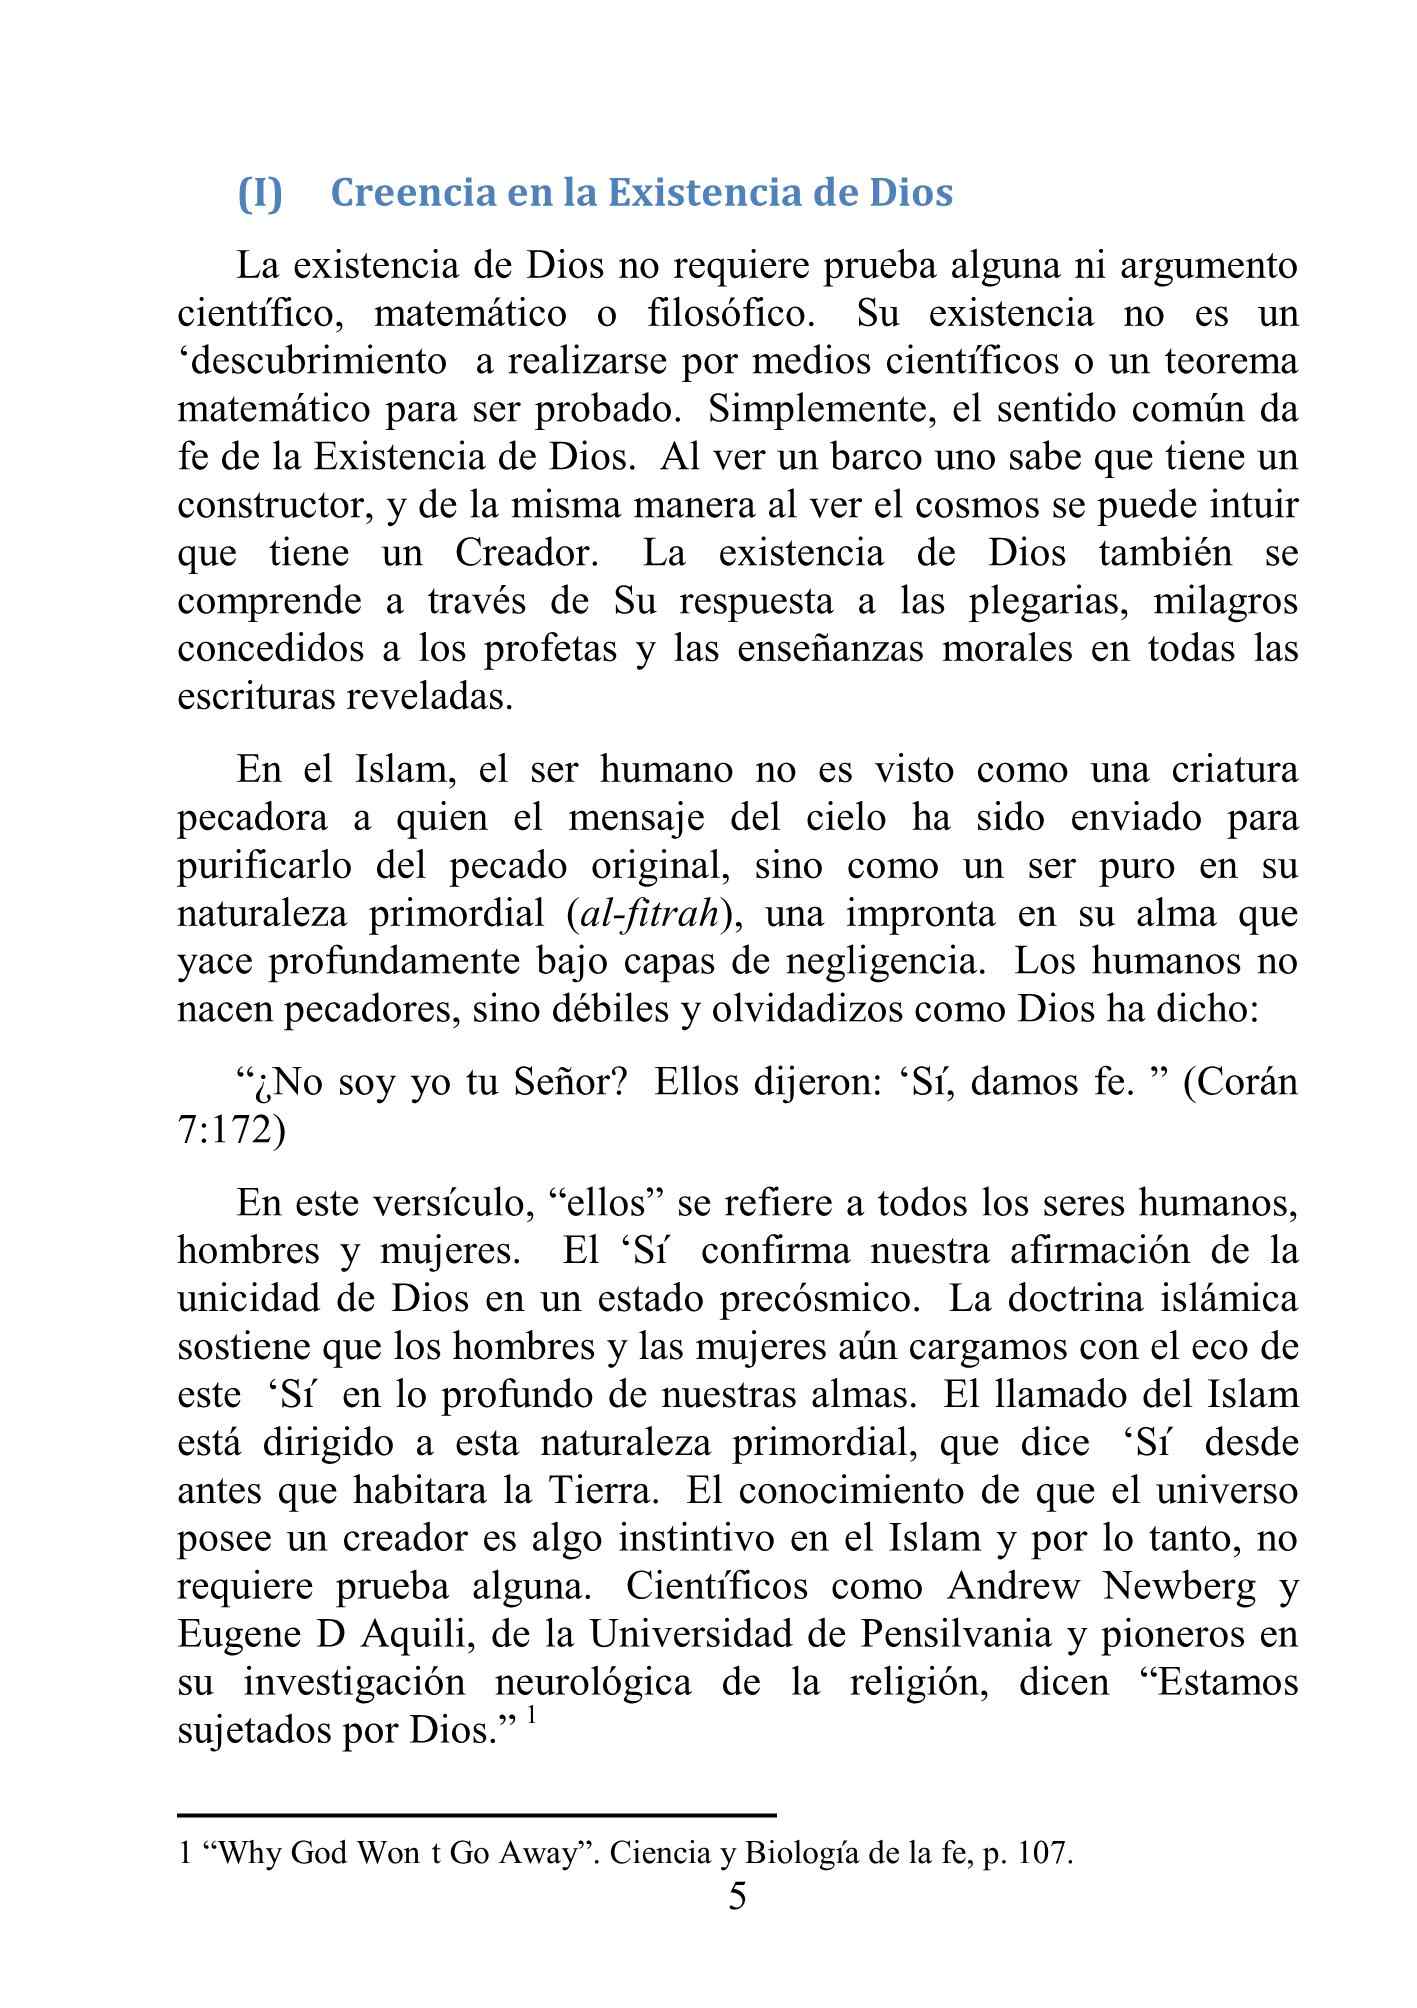 إسباني - الاعتقاد في الله - Creencia en Dios.pdf, 11-Sayfa 